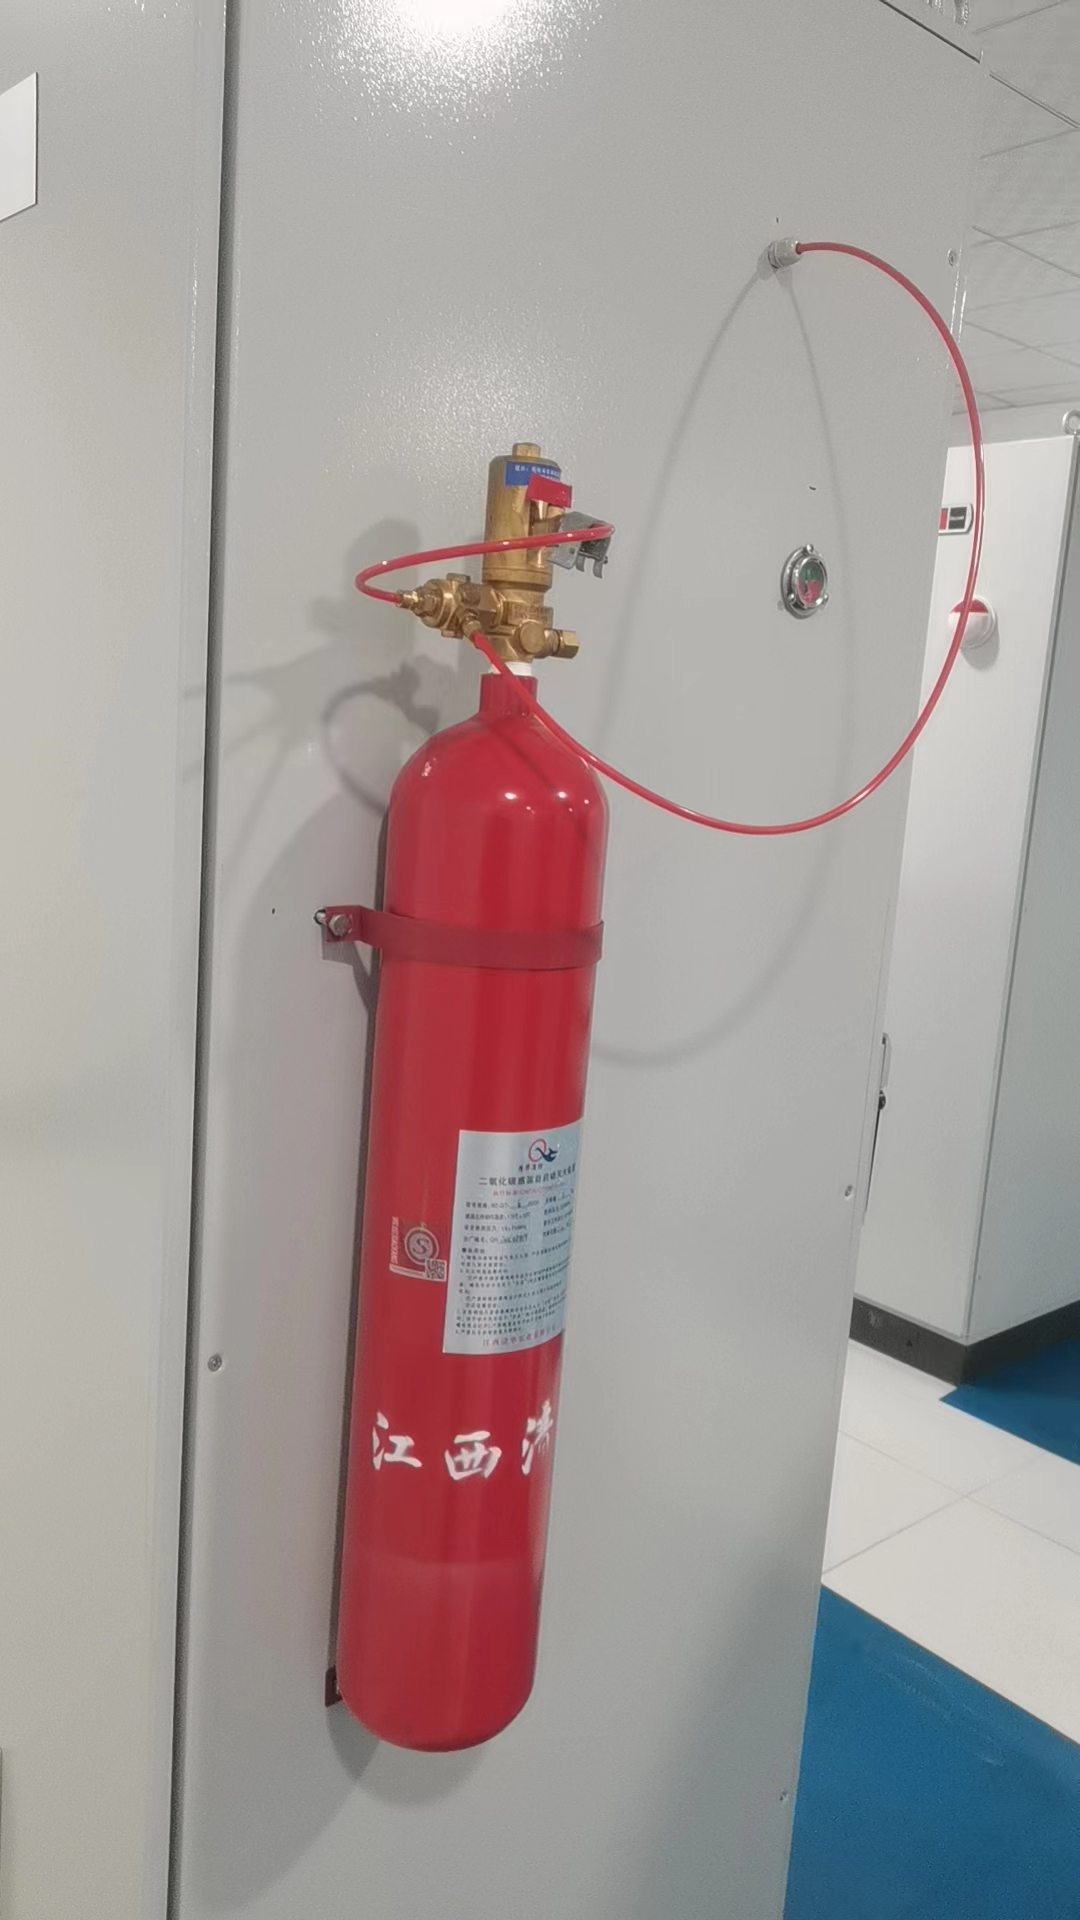 火探管自定位滅火系統充裝、檢測